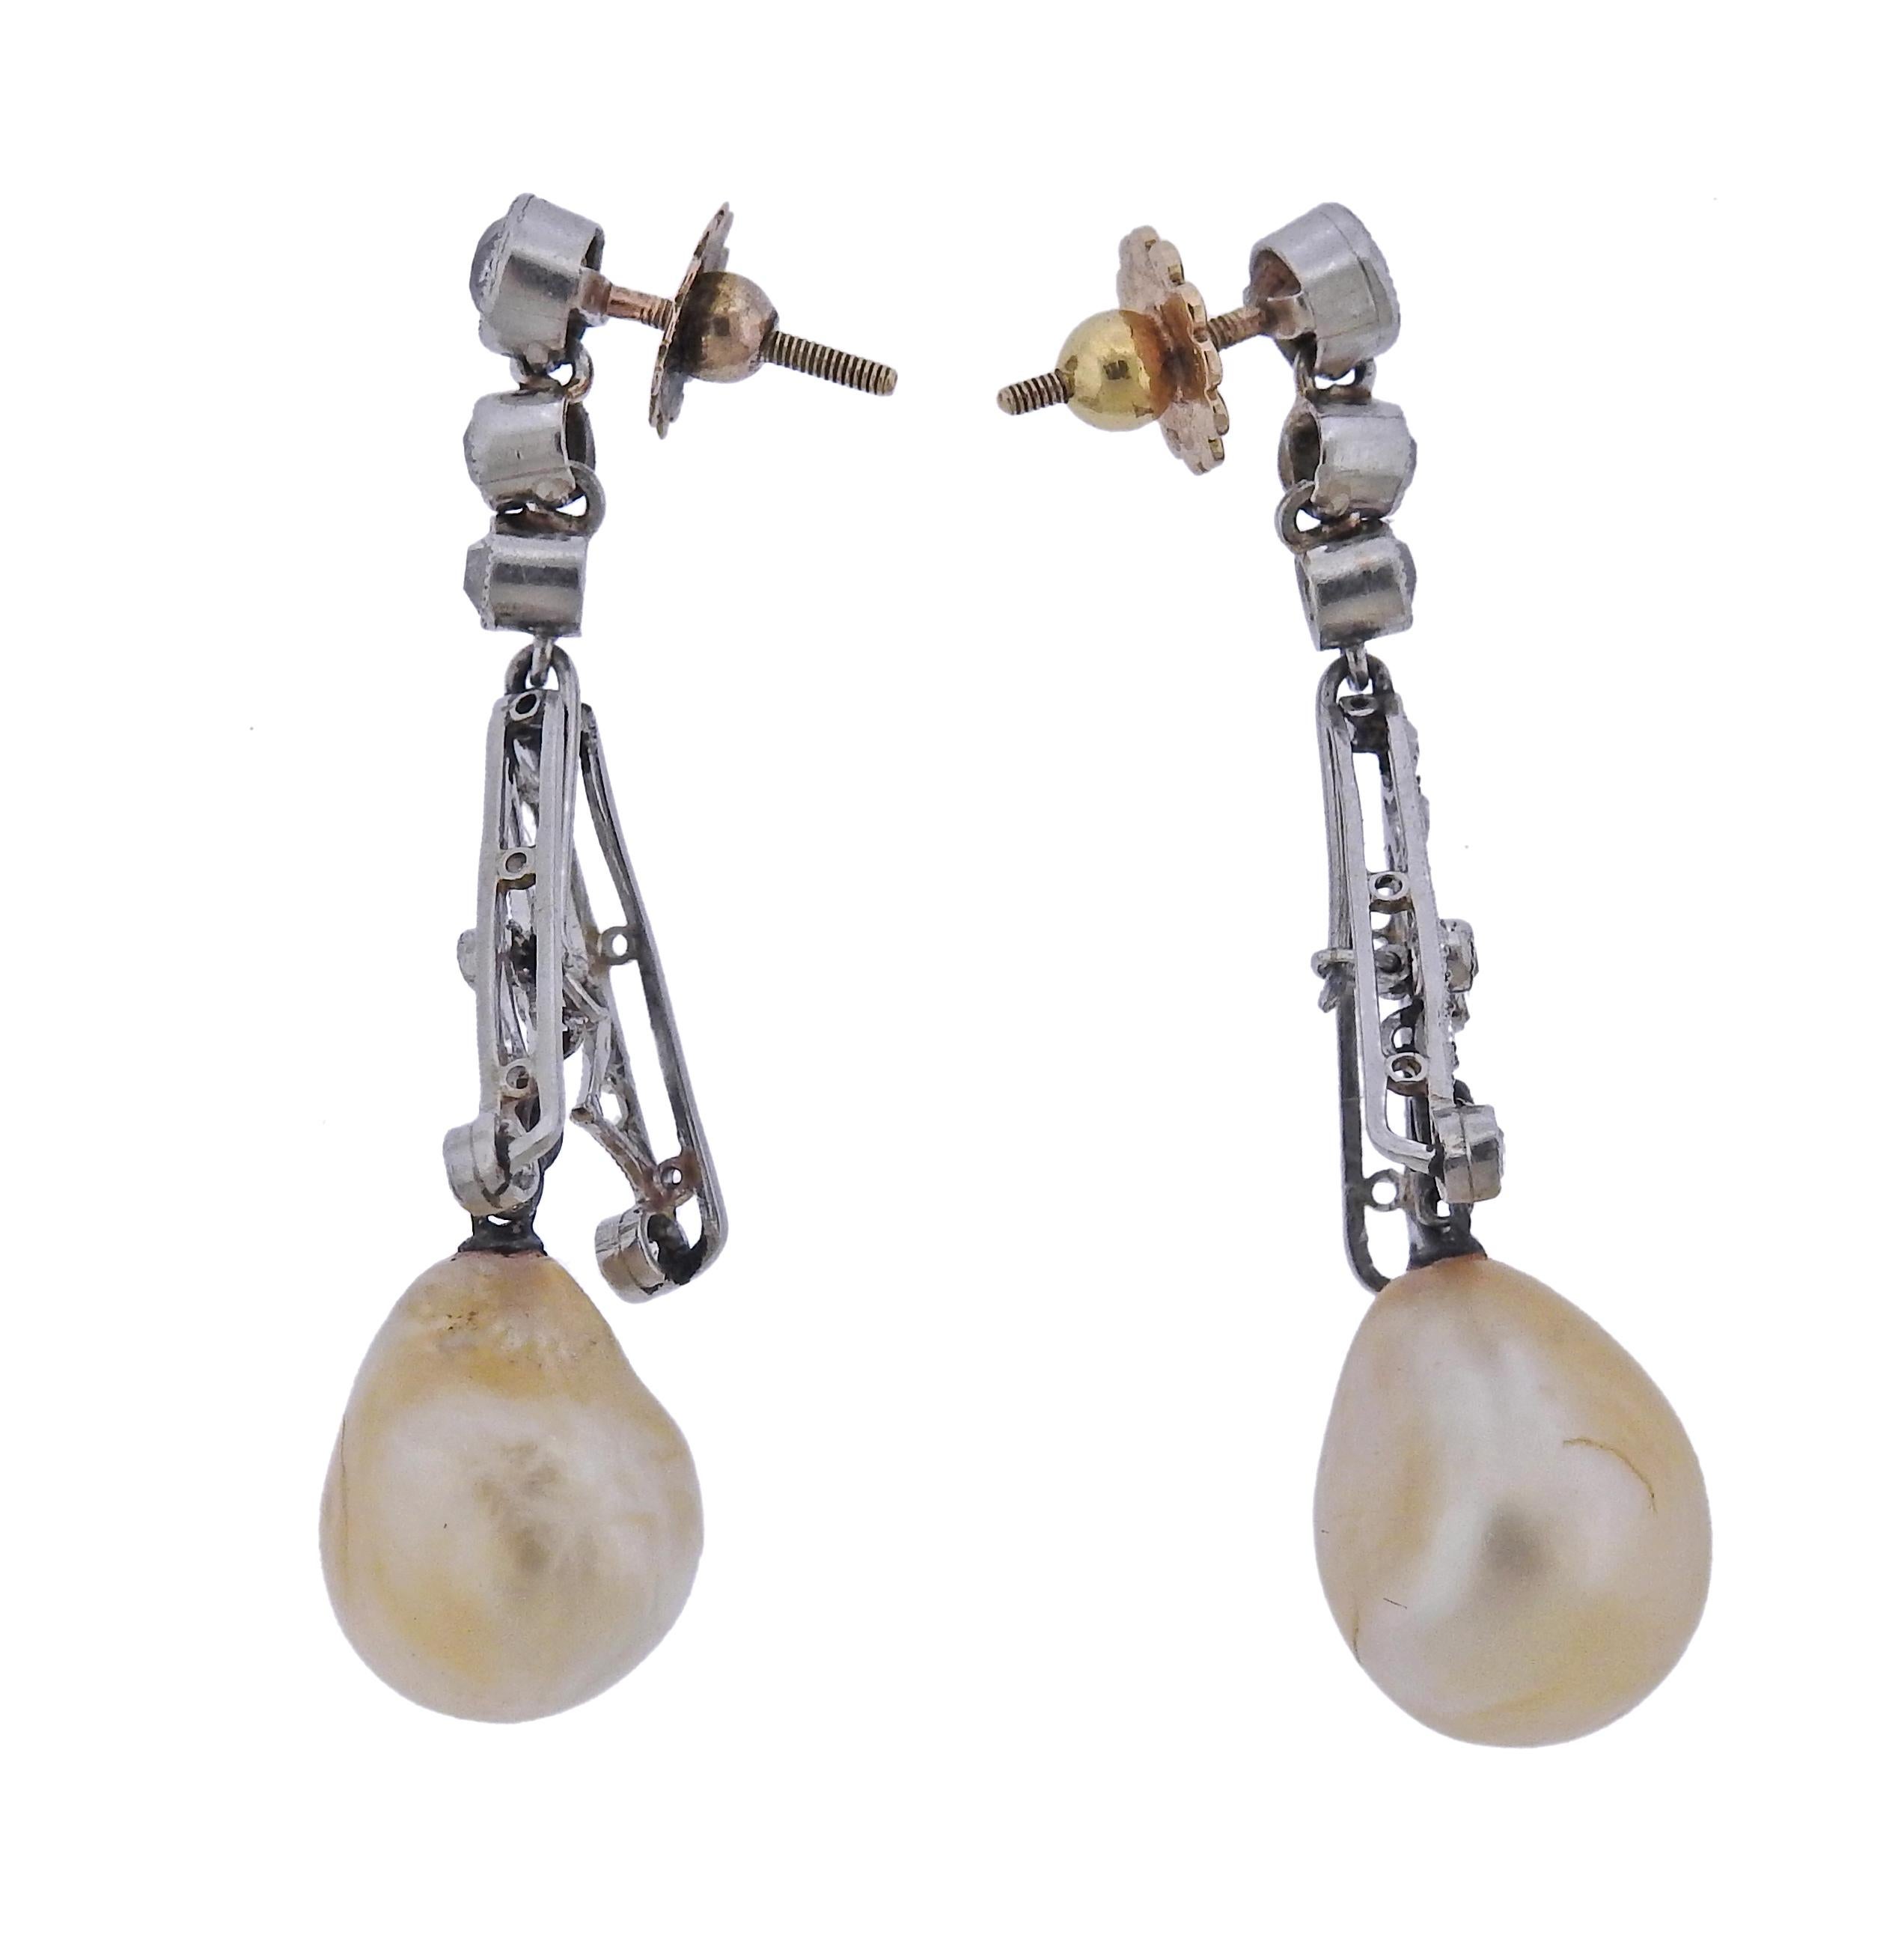 Art-Deco-Ohrringe aus Platin und Gold mit zwei natürlichen Perlen, ca. 12,6 x 10 mm und 13,3 x 10,9 mm groß. Umgeben von Diamanten im Rosen- und Altminenschliff. Die Ohrringe sind 44 mm lang. Gewicht - 8,7 Gramm.